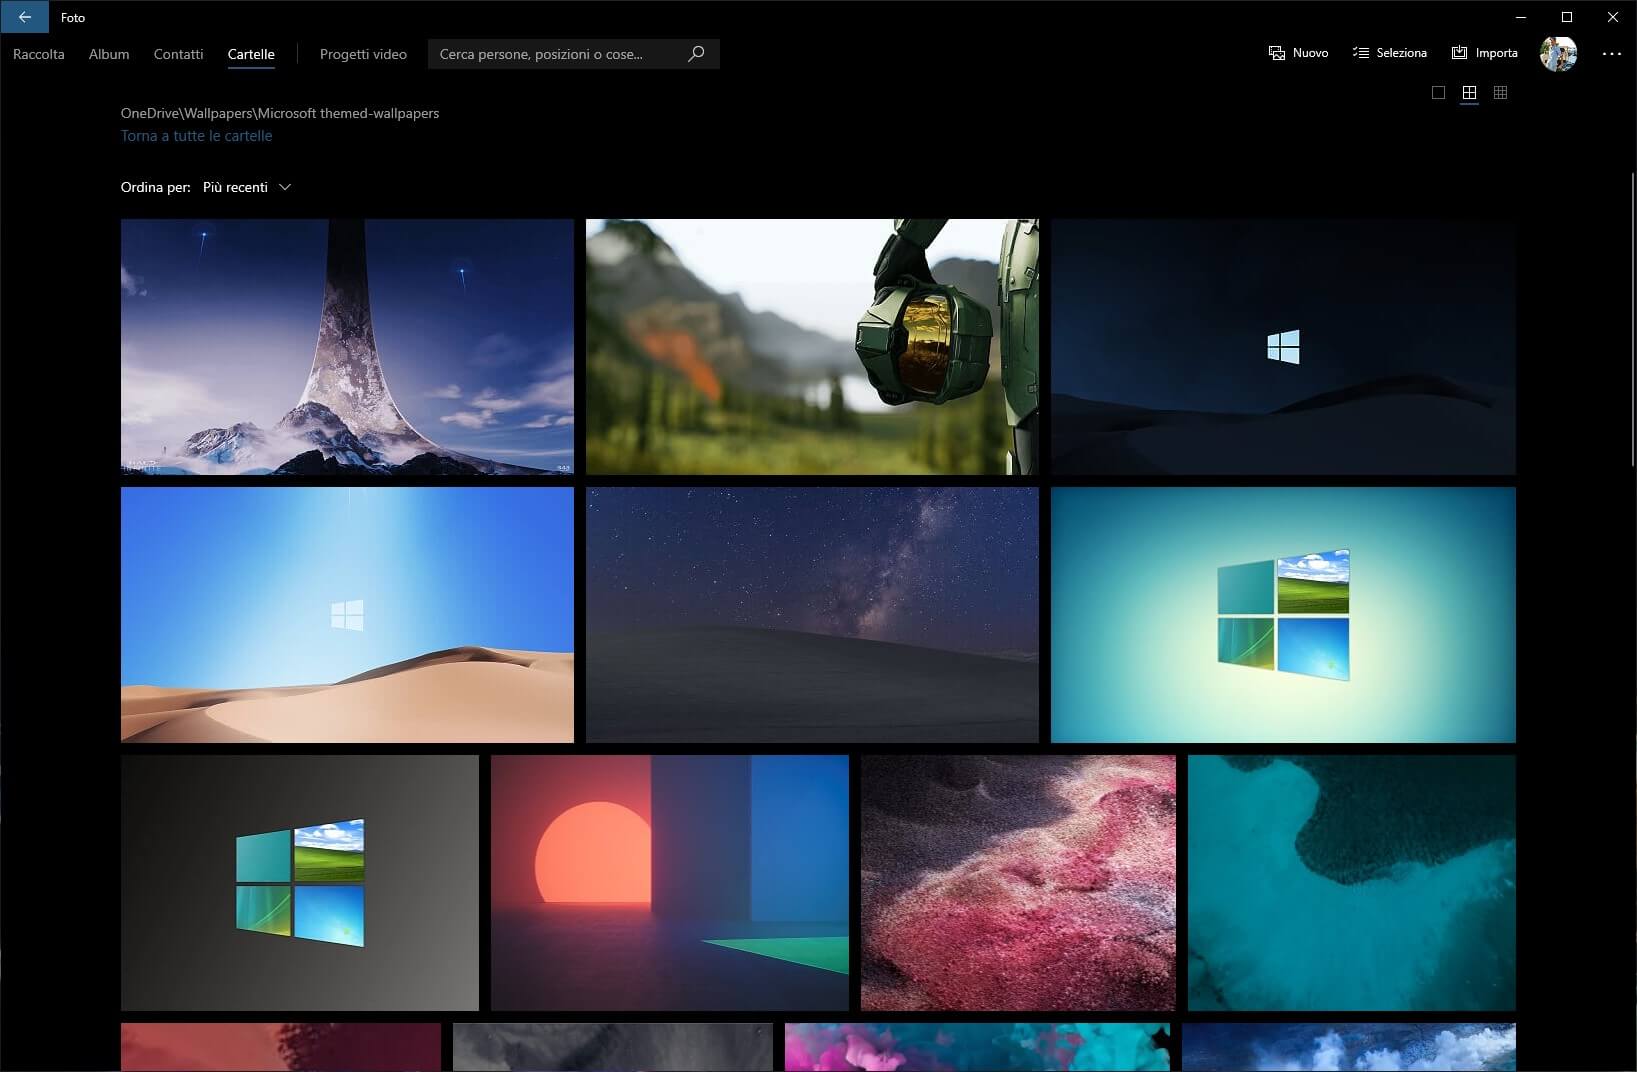 Microsoft Foto Su Windows 10 Nuovo Layout Tema Scuro